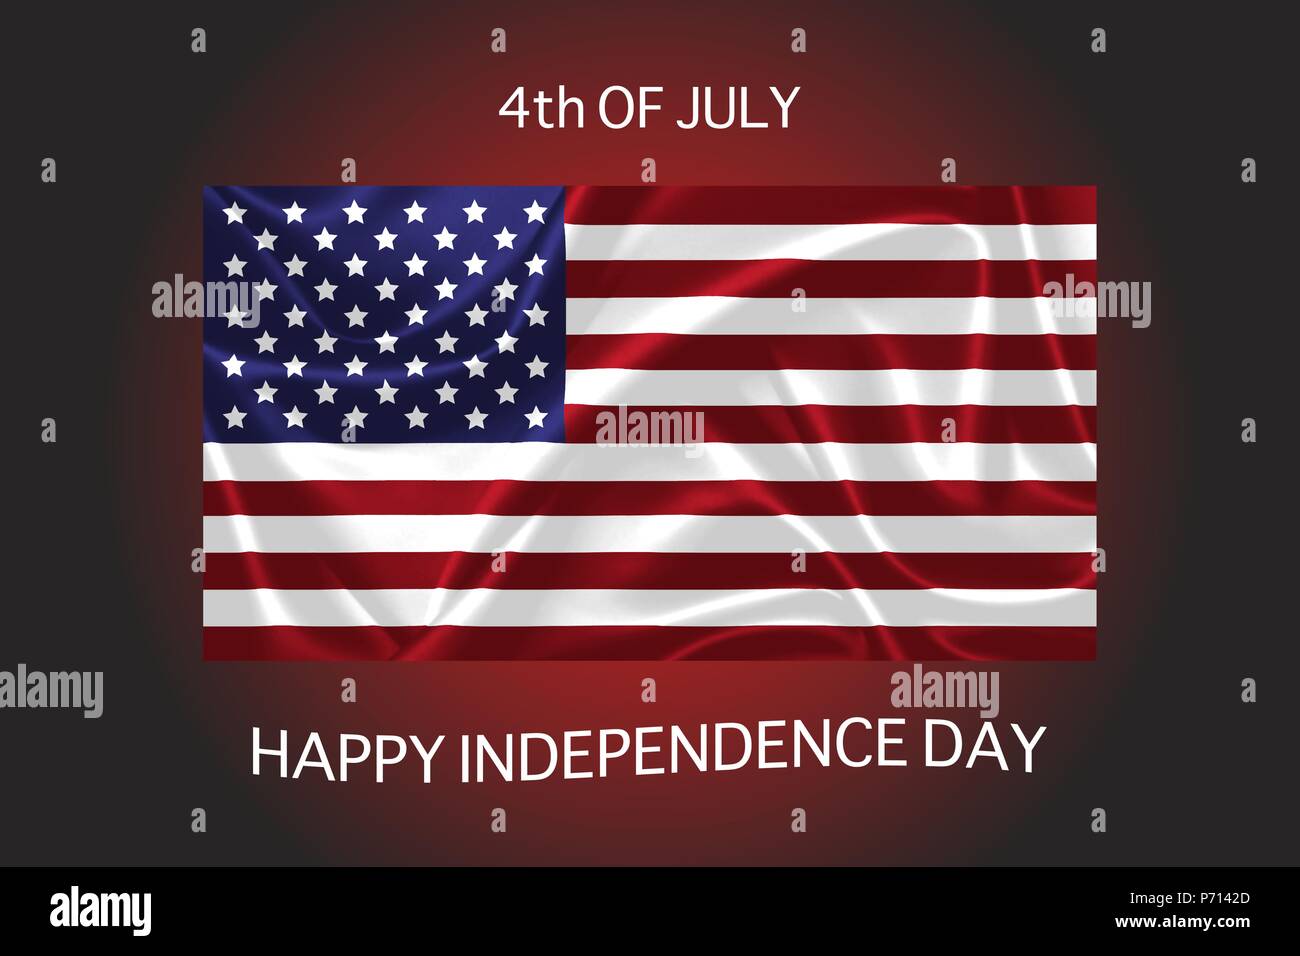 Image vectorielle pour célébrer l'indépendance nous jour Illustration de Vecteur